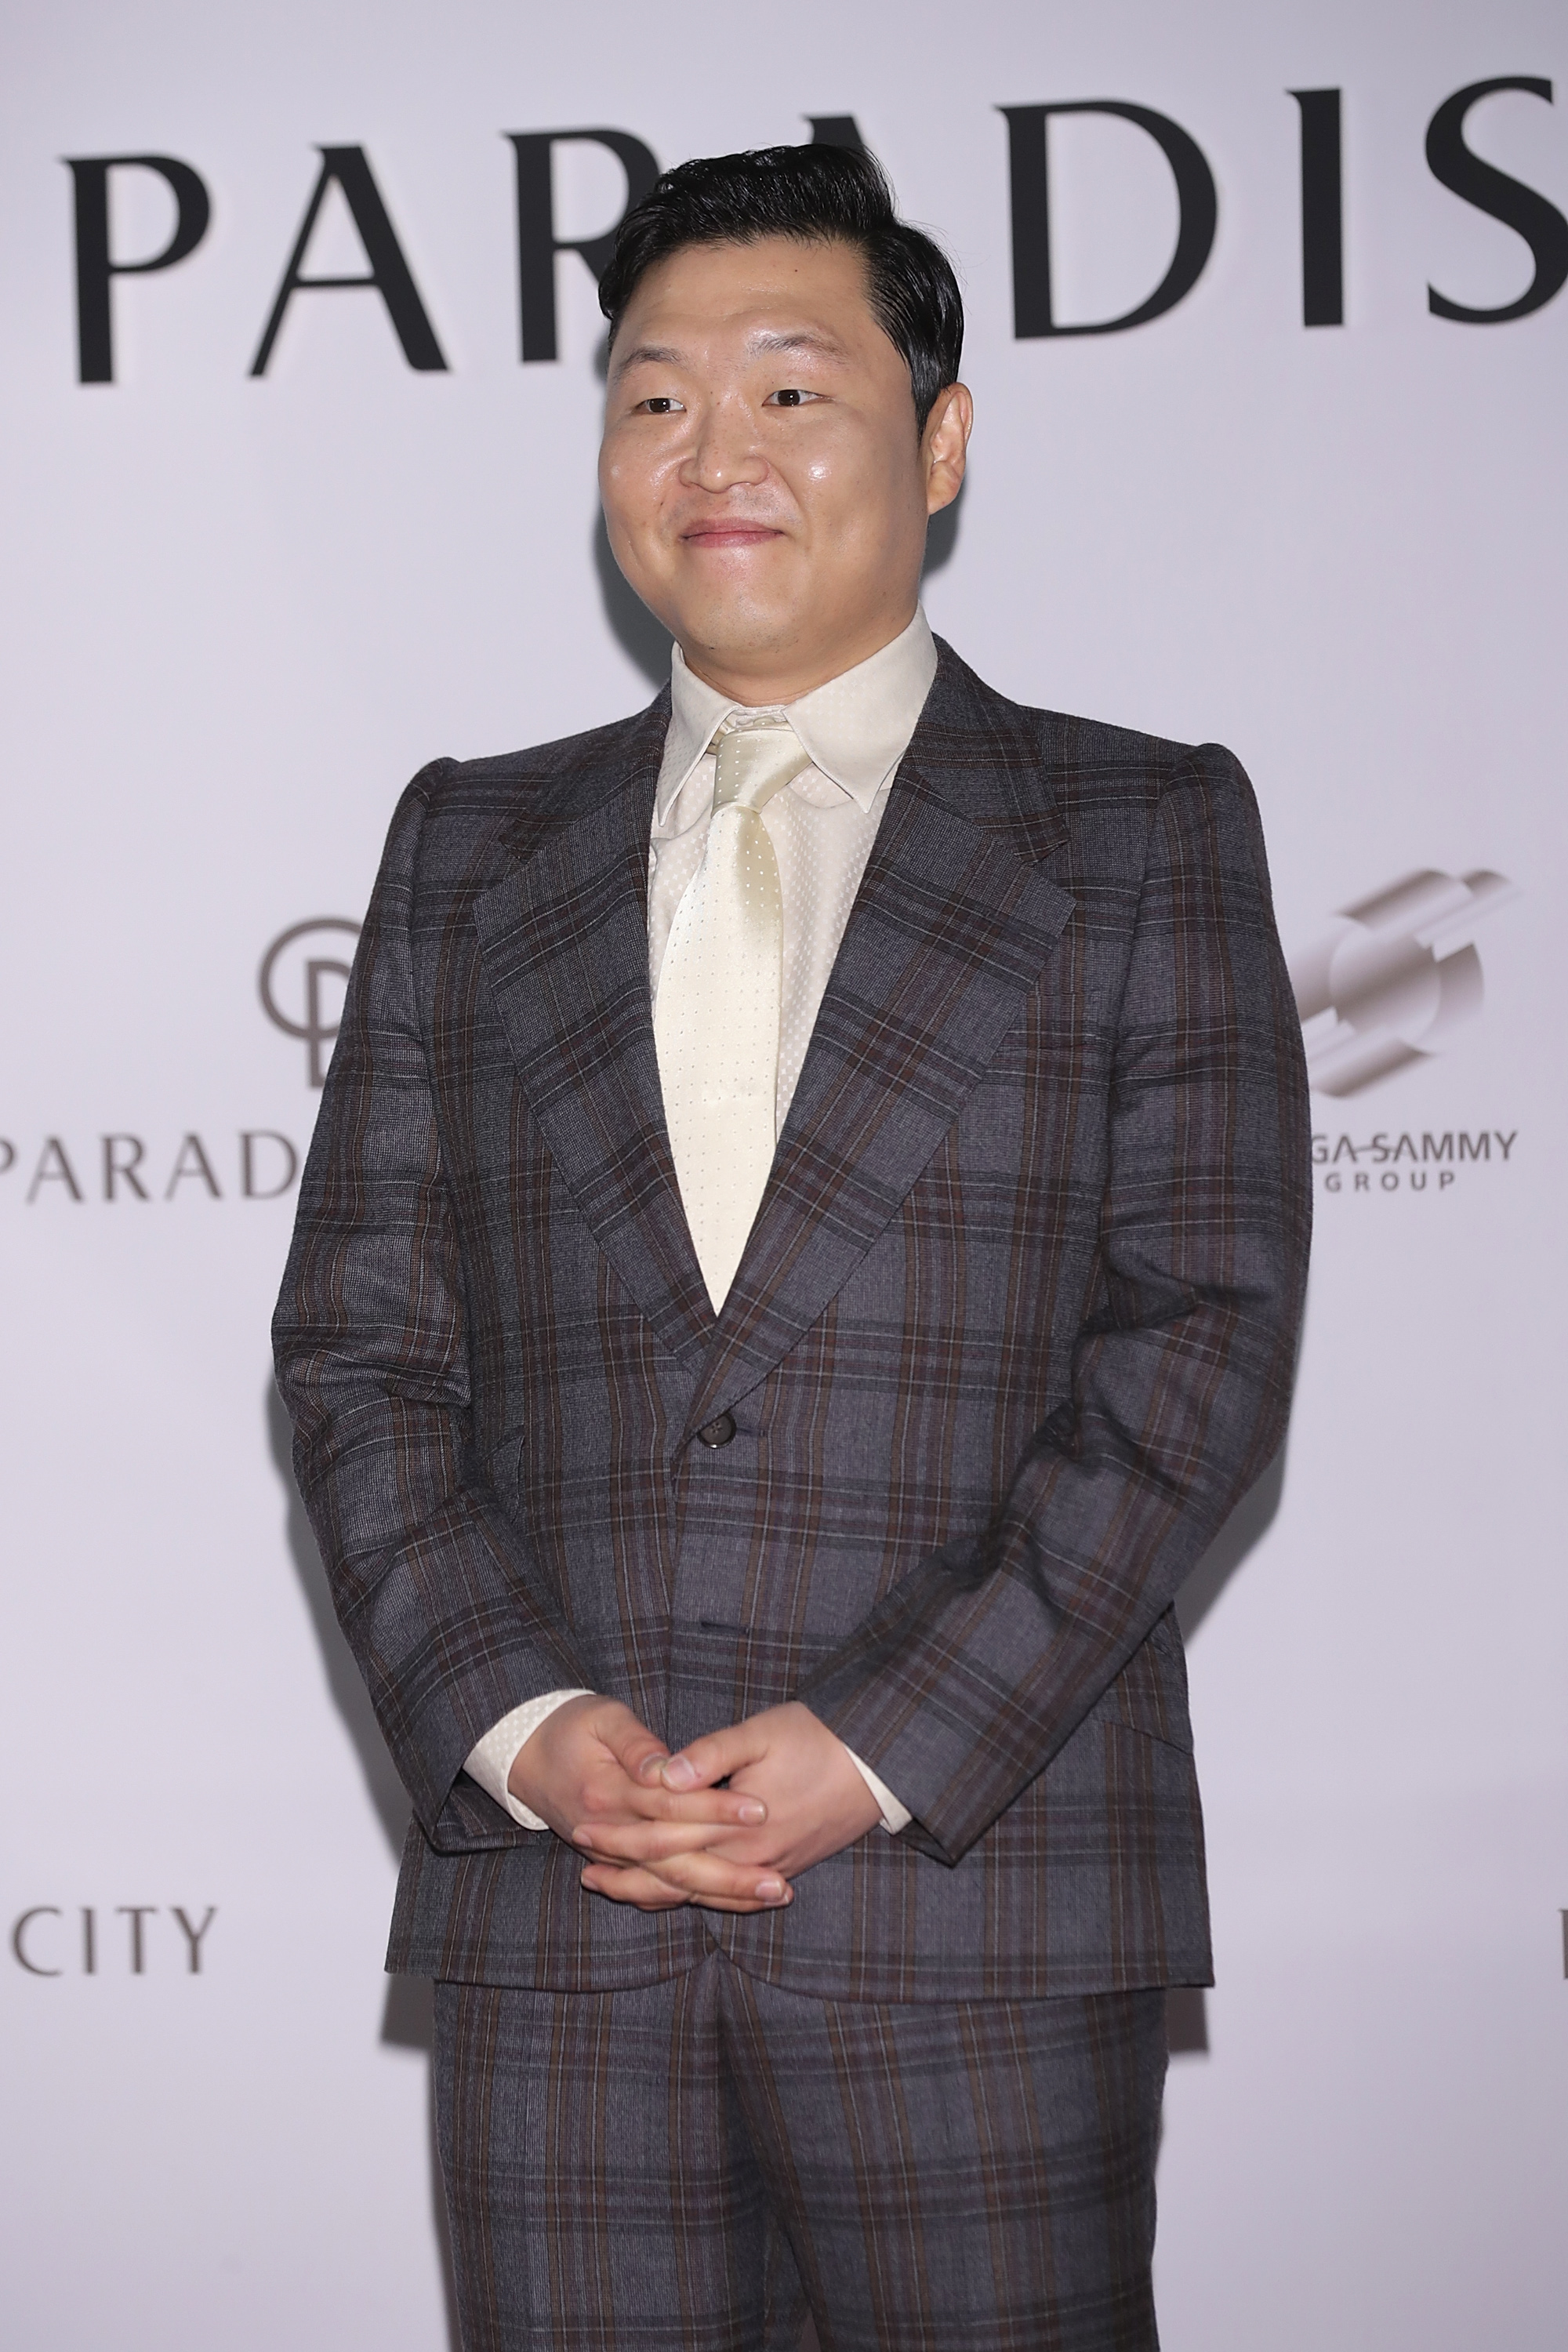 Psy lors de l'inauguration de "PARADISE CITY" le 20 avril 2017 à Incheon, en Corée du Sud. | Source : Getty Images